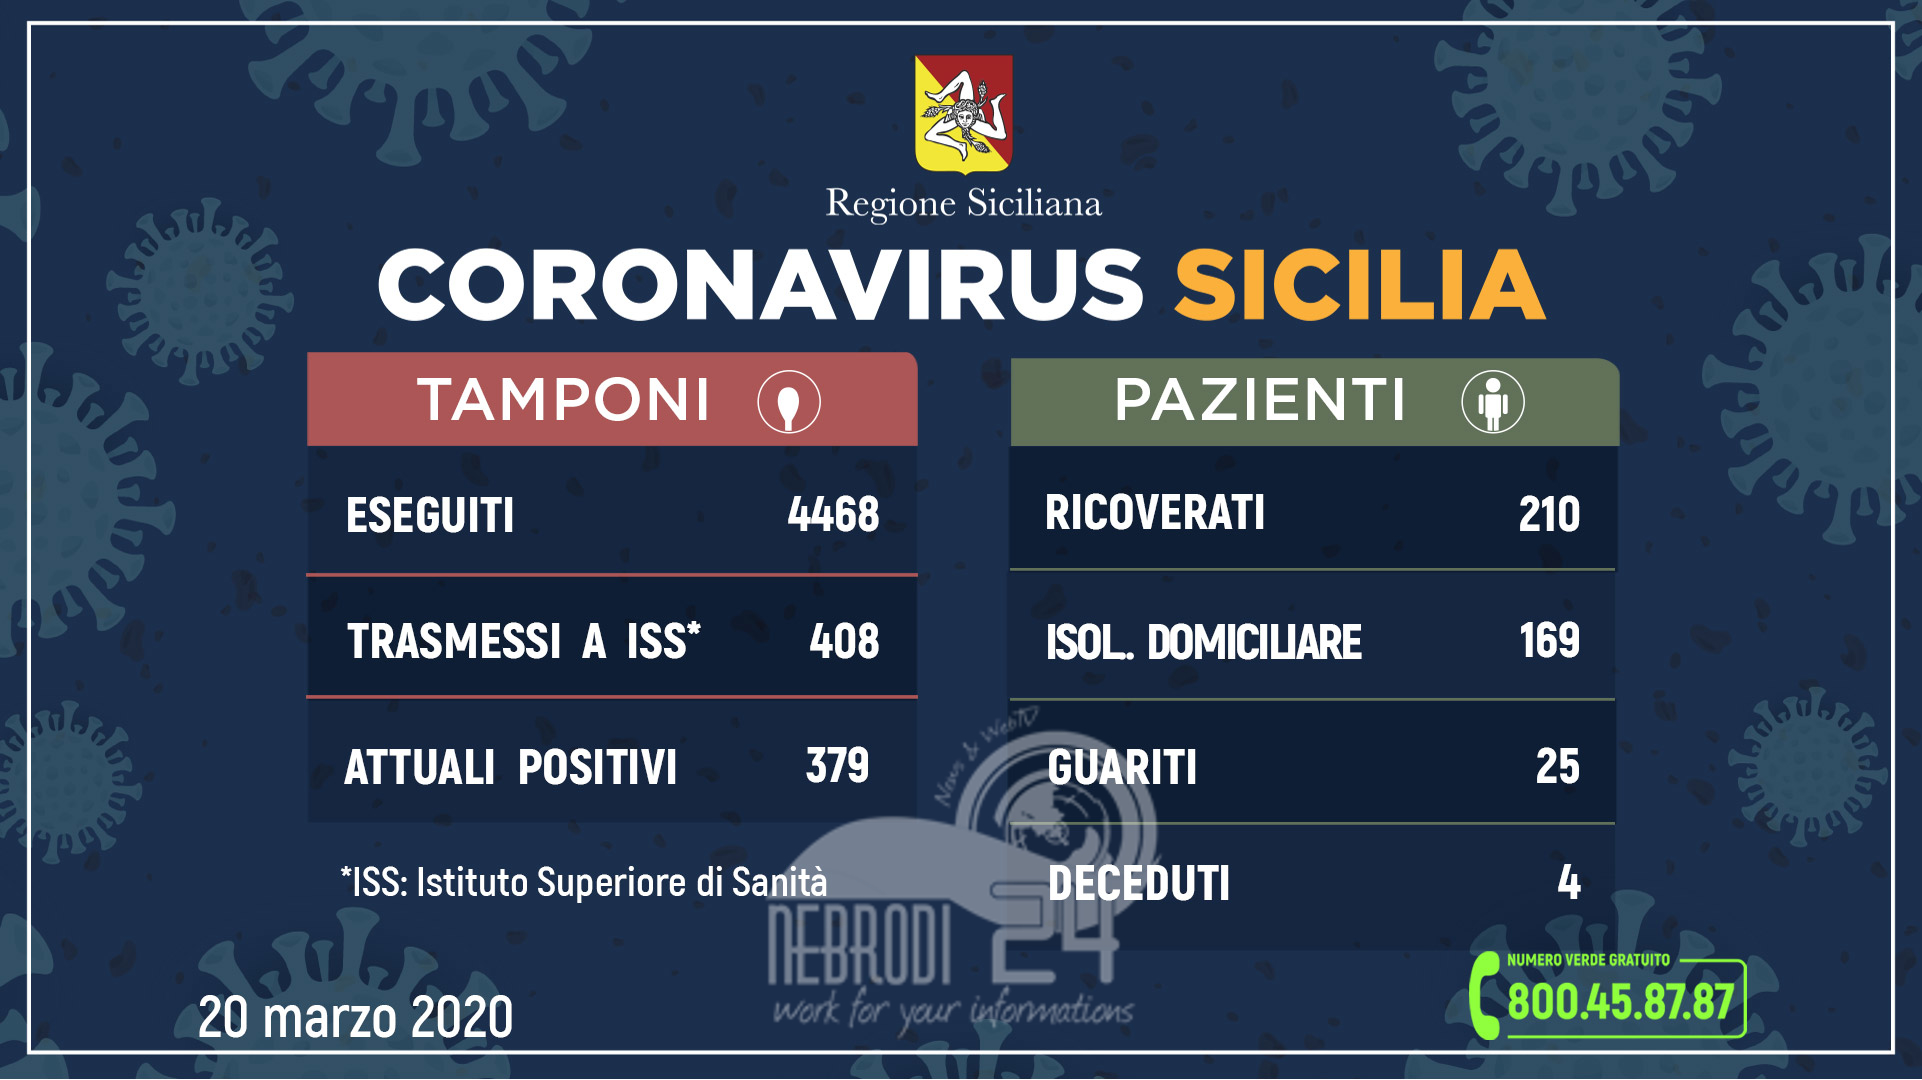 Coronavirus: l’aggiornamento in Sicilia, 379 attuali positivi (39 più di ieri), 25 guariti